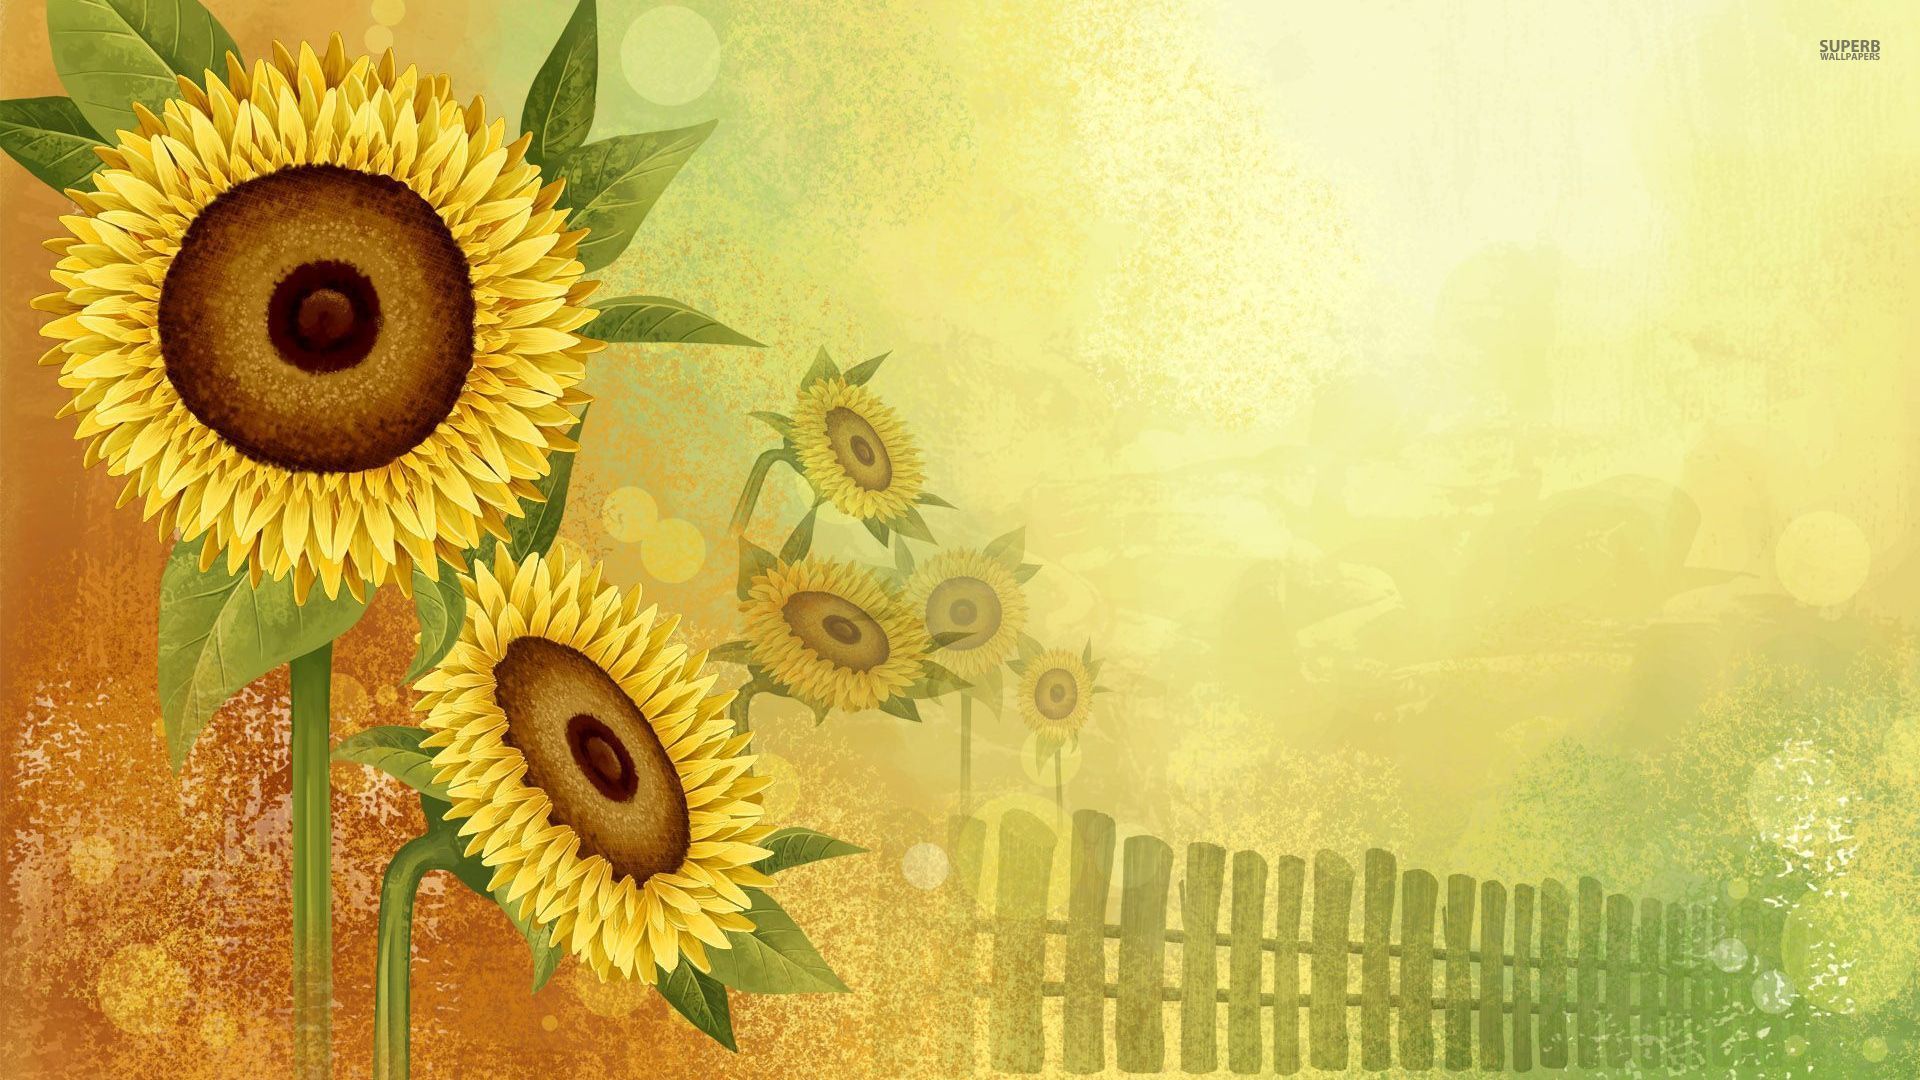 Sunflowers wallpaper - Digital Art wallpapers - #36167